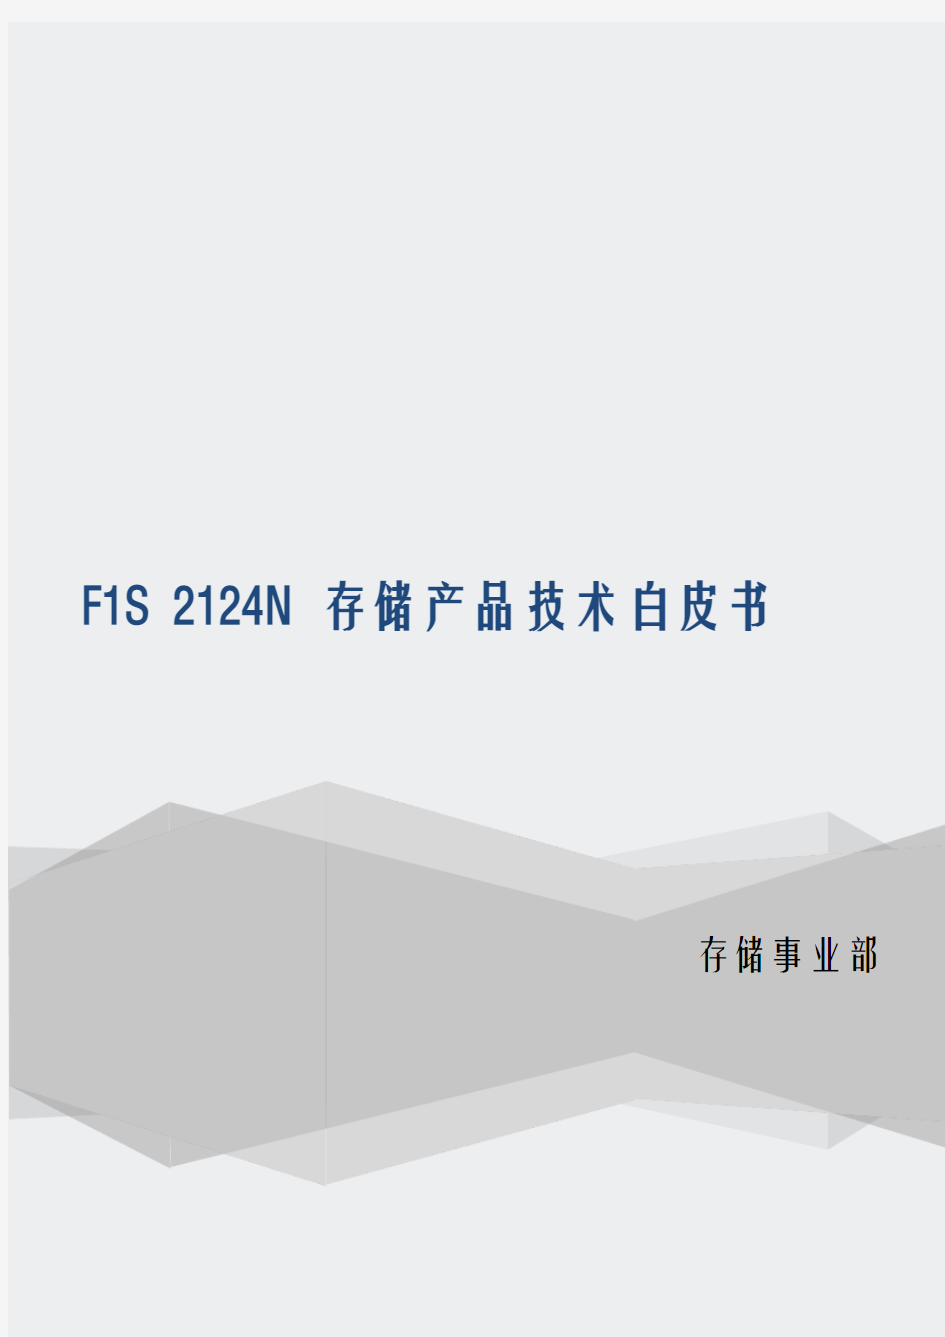 精一科技F1S2124N存储产品技术白皮书2016版